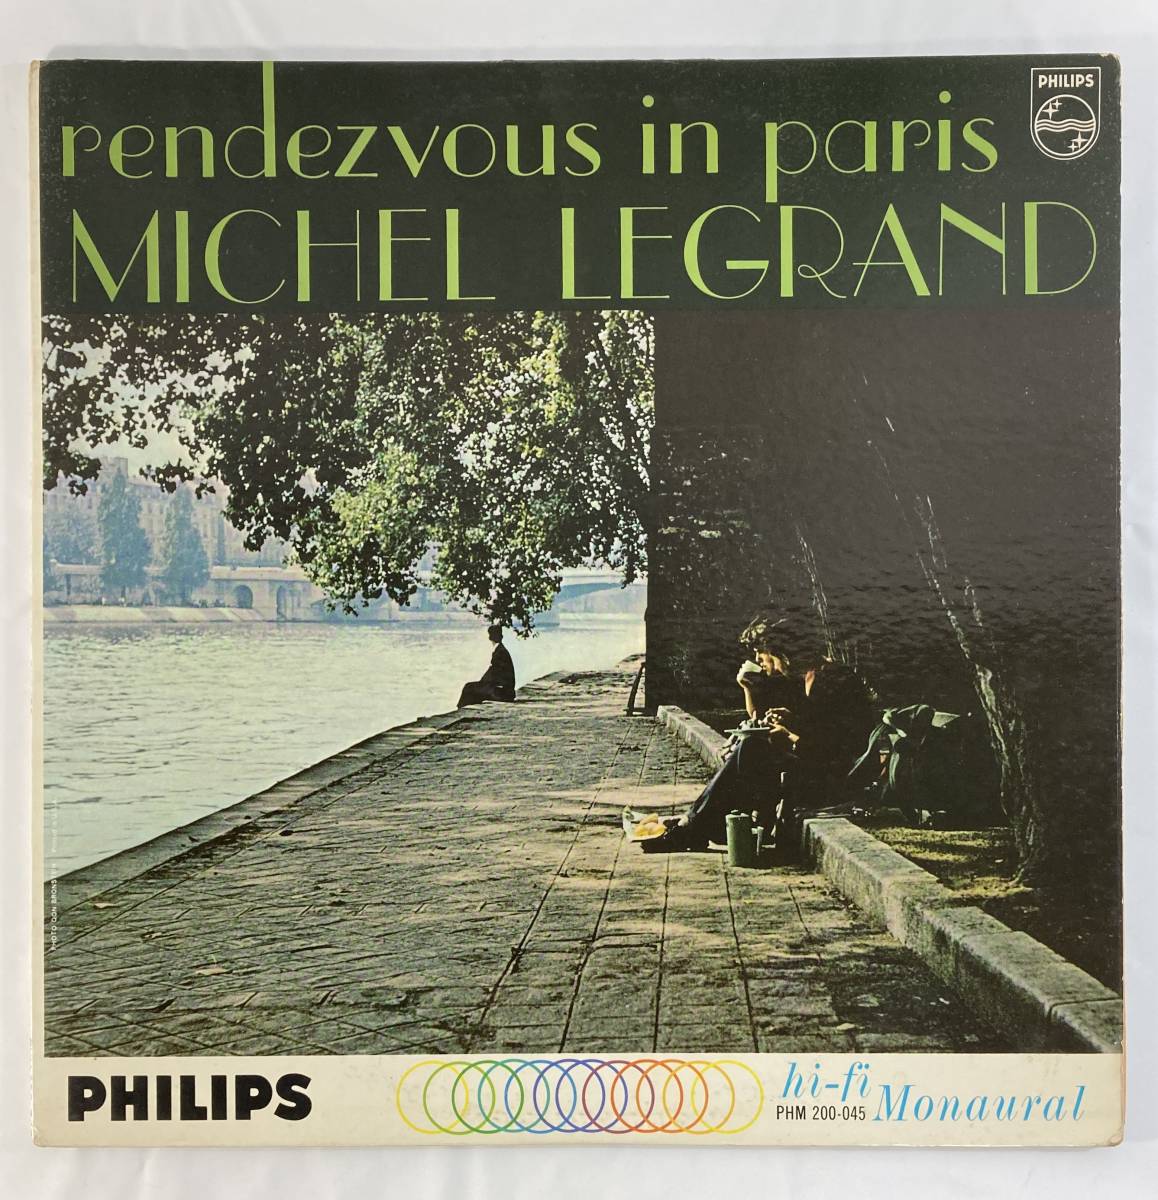  Michel * legrand (Michel Legrand) / rendevouz in paris American record LP Philips PHM 200-045 MONO